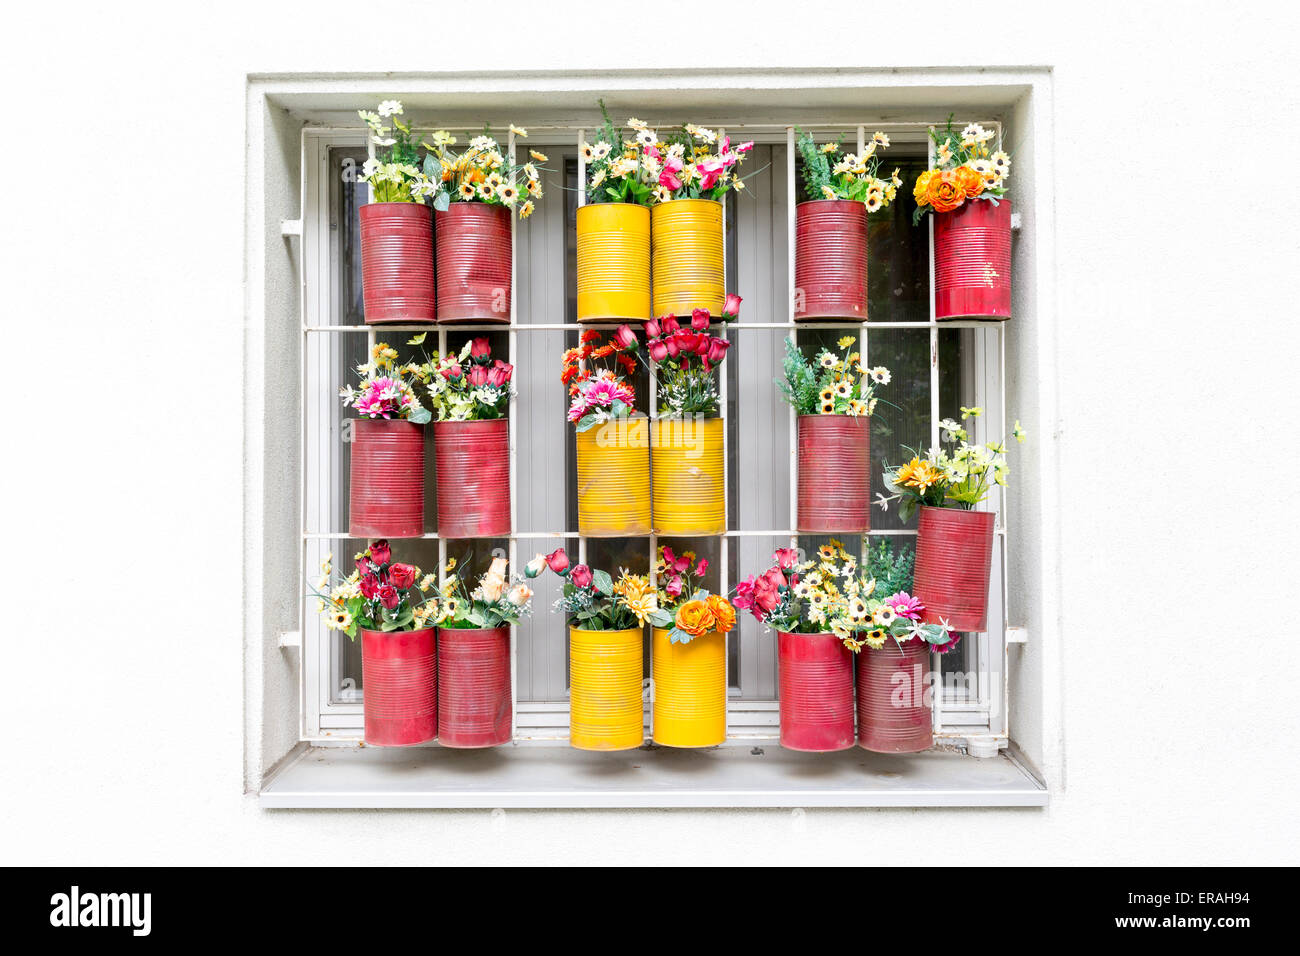 Fenster mit bunten Blumentöpfen in Wien, Österreich. Stockfoto